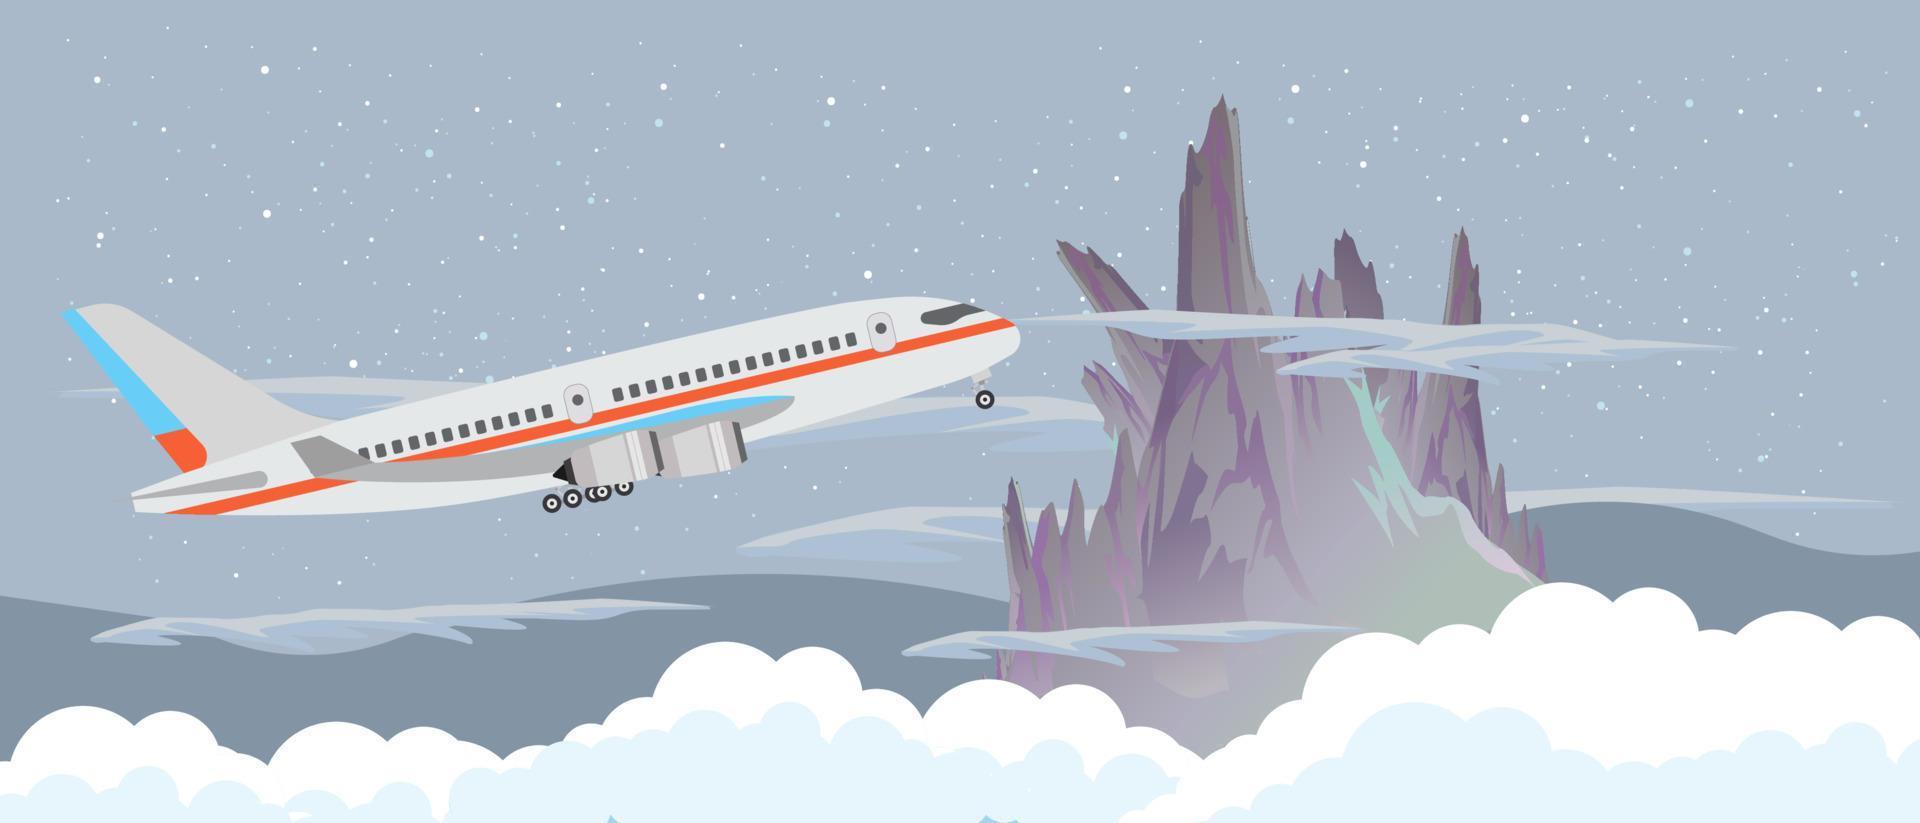 flygplan flyger på himlen på natten nära ett berg och moln vektor platt design illustration banner